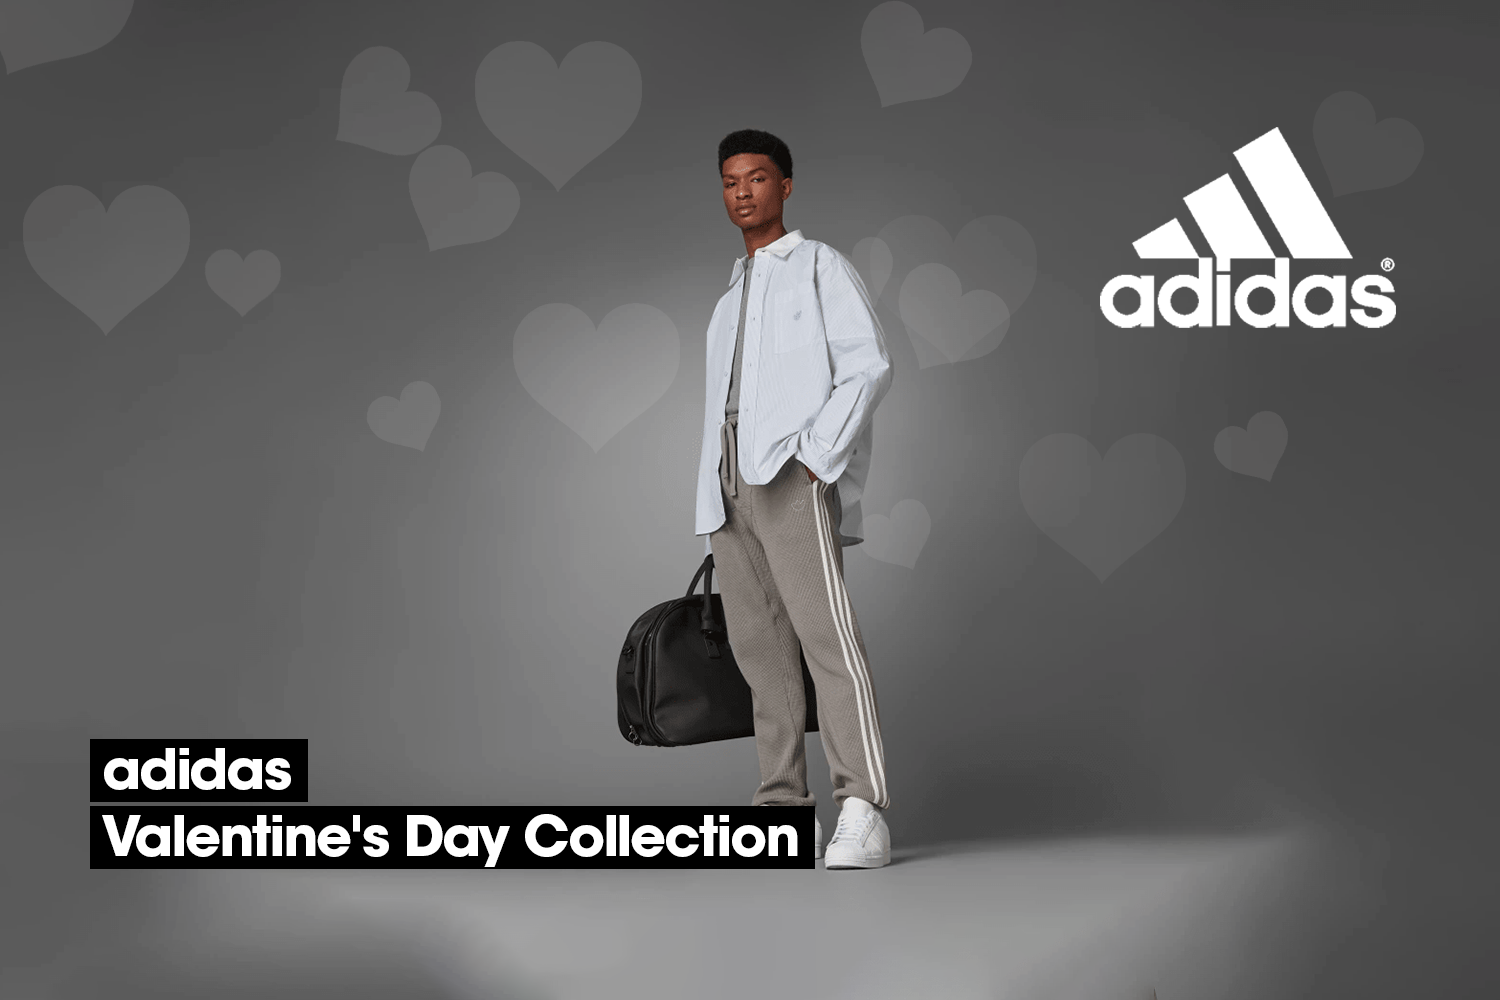 adidas viert Valentijnsdag met een bijzondere collectie